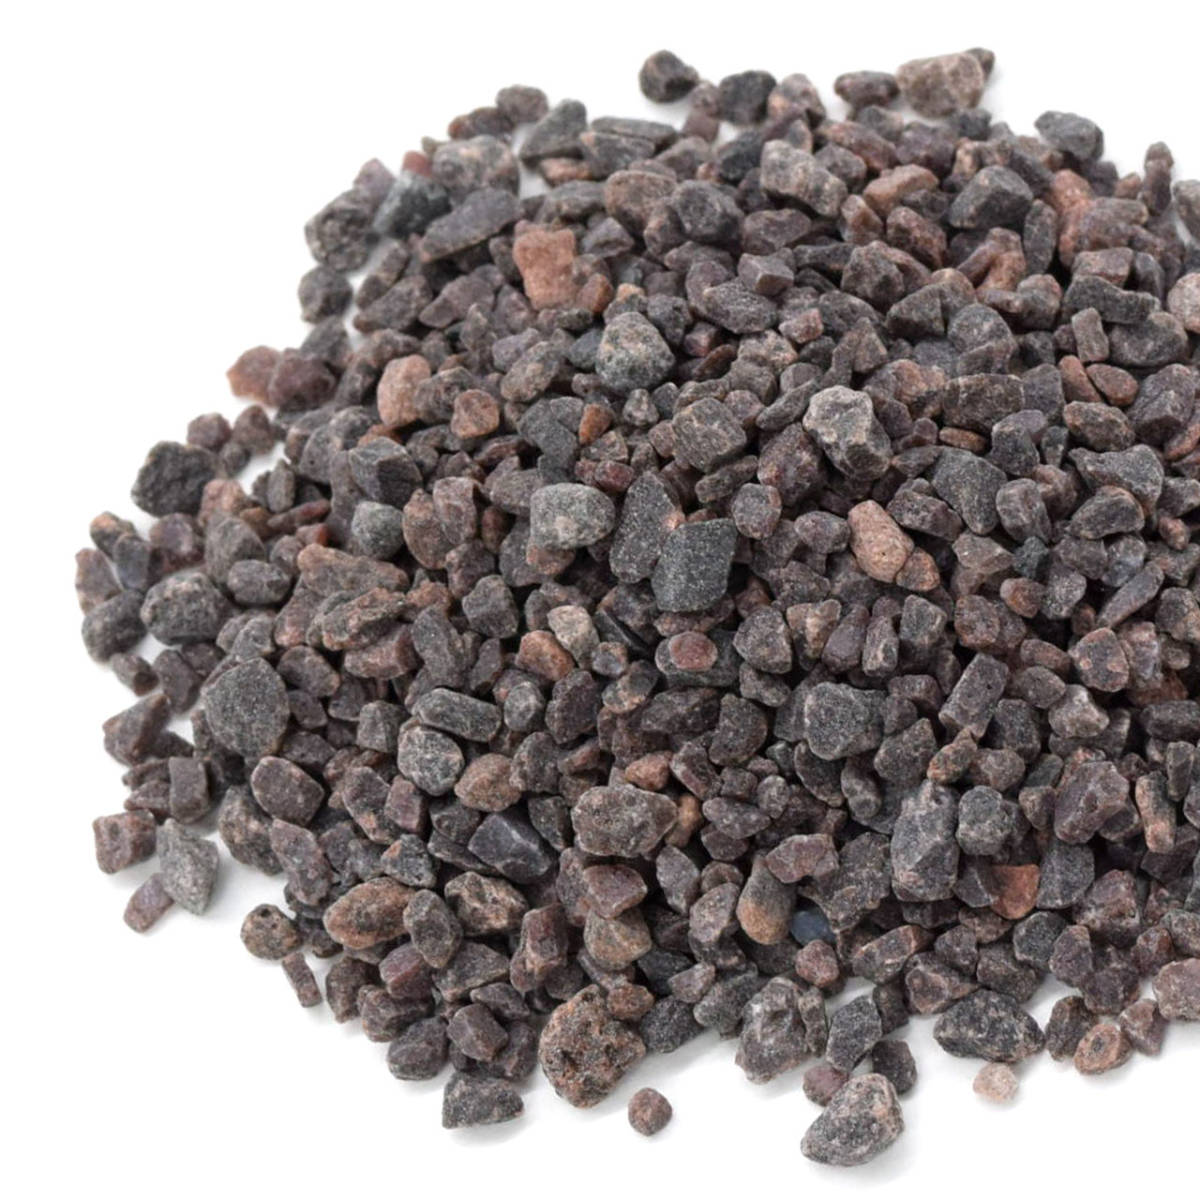  скала соль еда для натуральный скала соль himalaya производство шарик черный 450g дешевый!